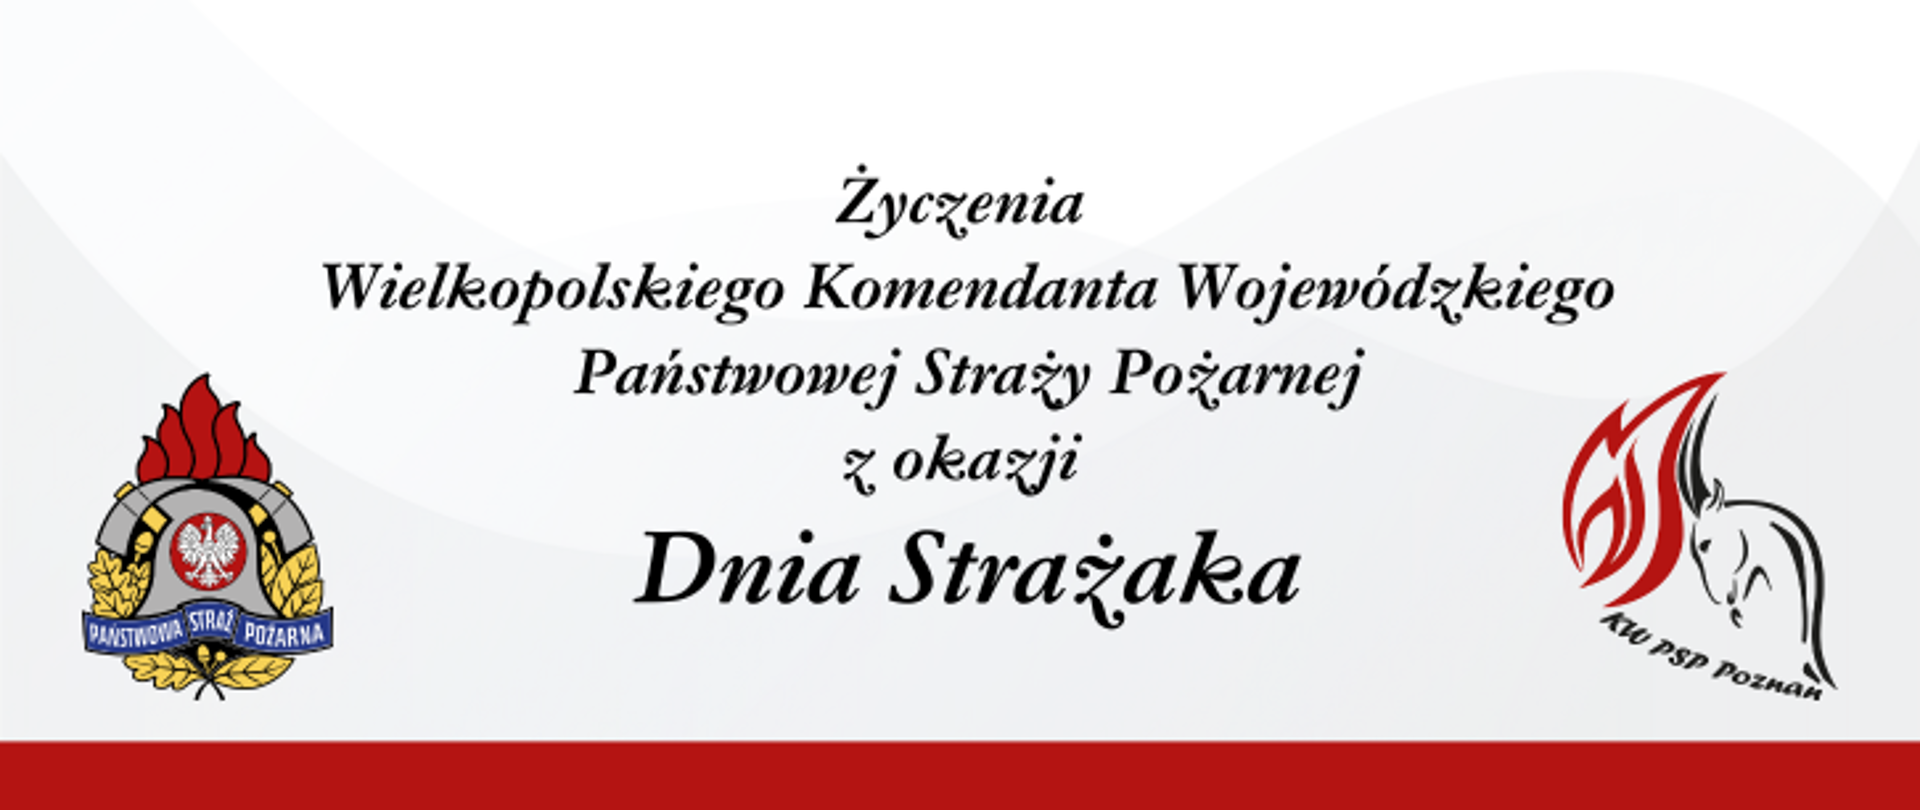 Na zdjęciu widzimy baner z napisem" Życzenia Wielkopolskiego Komendanta Wojewódzkiego Państwowej Straży Pożarnej z okazji Dnia Strażaka"